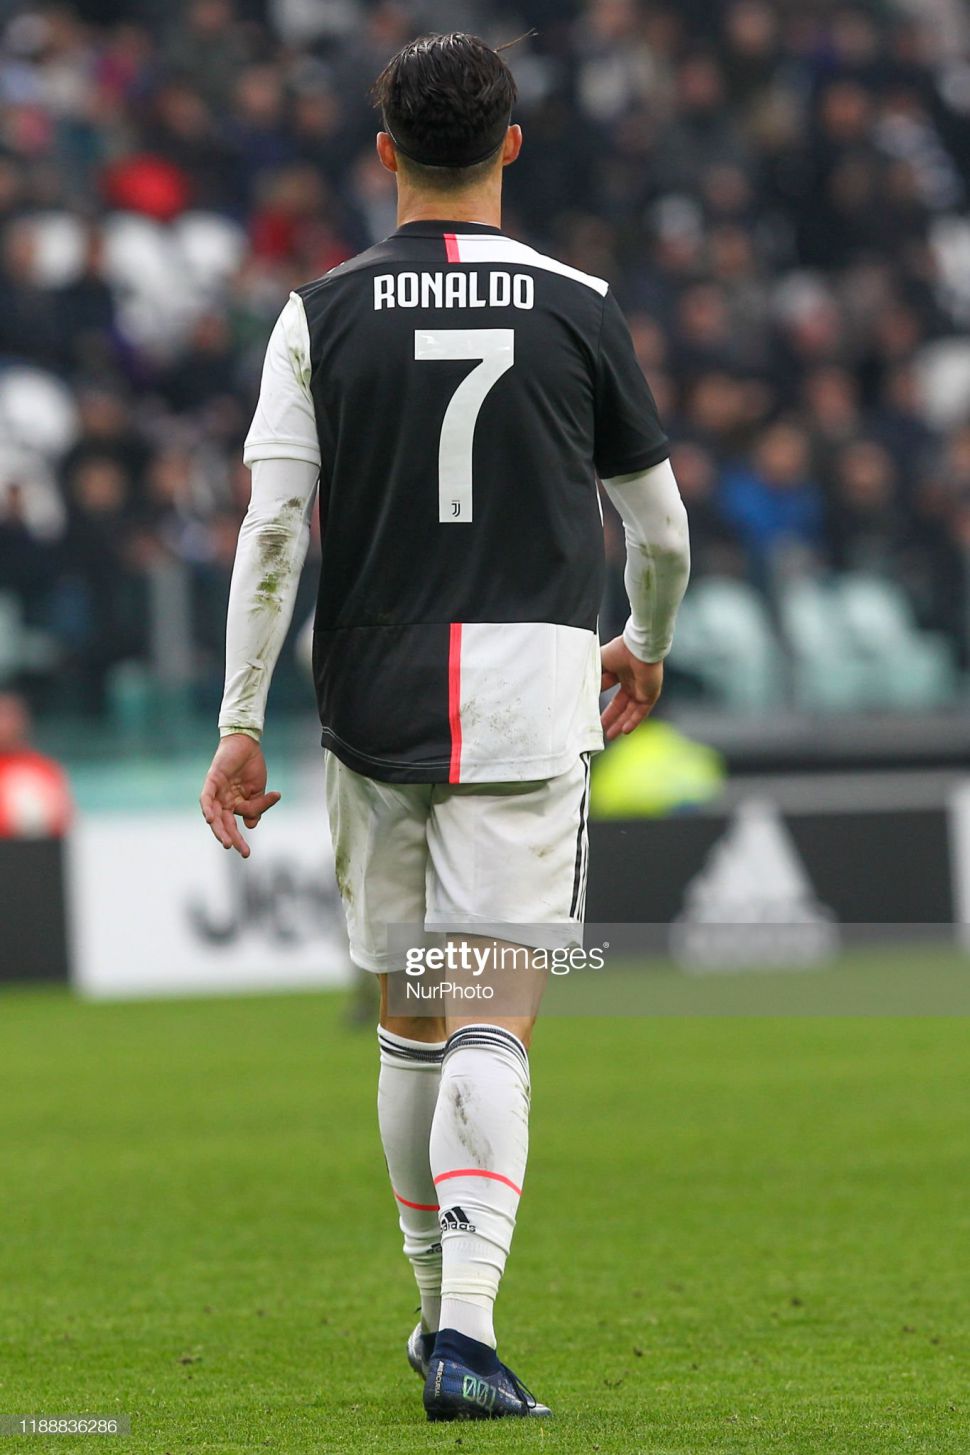 Áo đấu Ronaldo 7 Juventus 2019-2020 home shirt jersey DW5455 BNWT